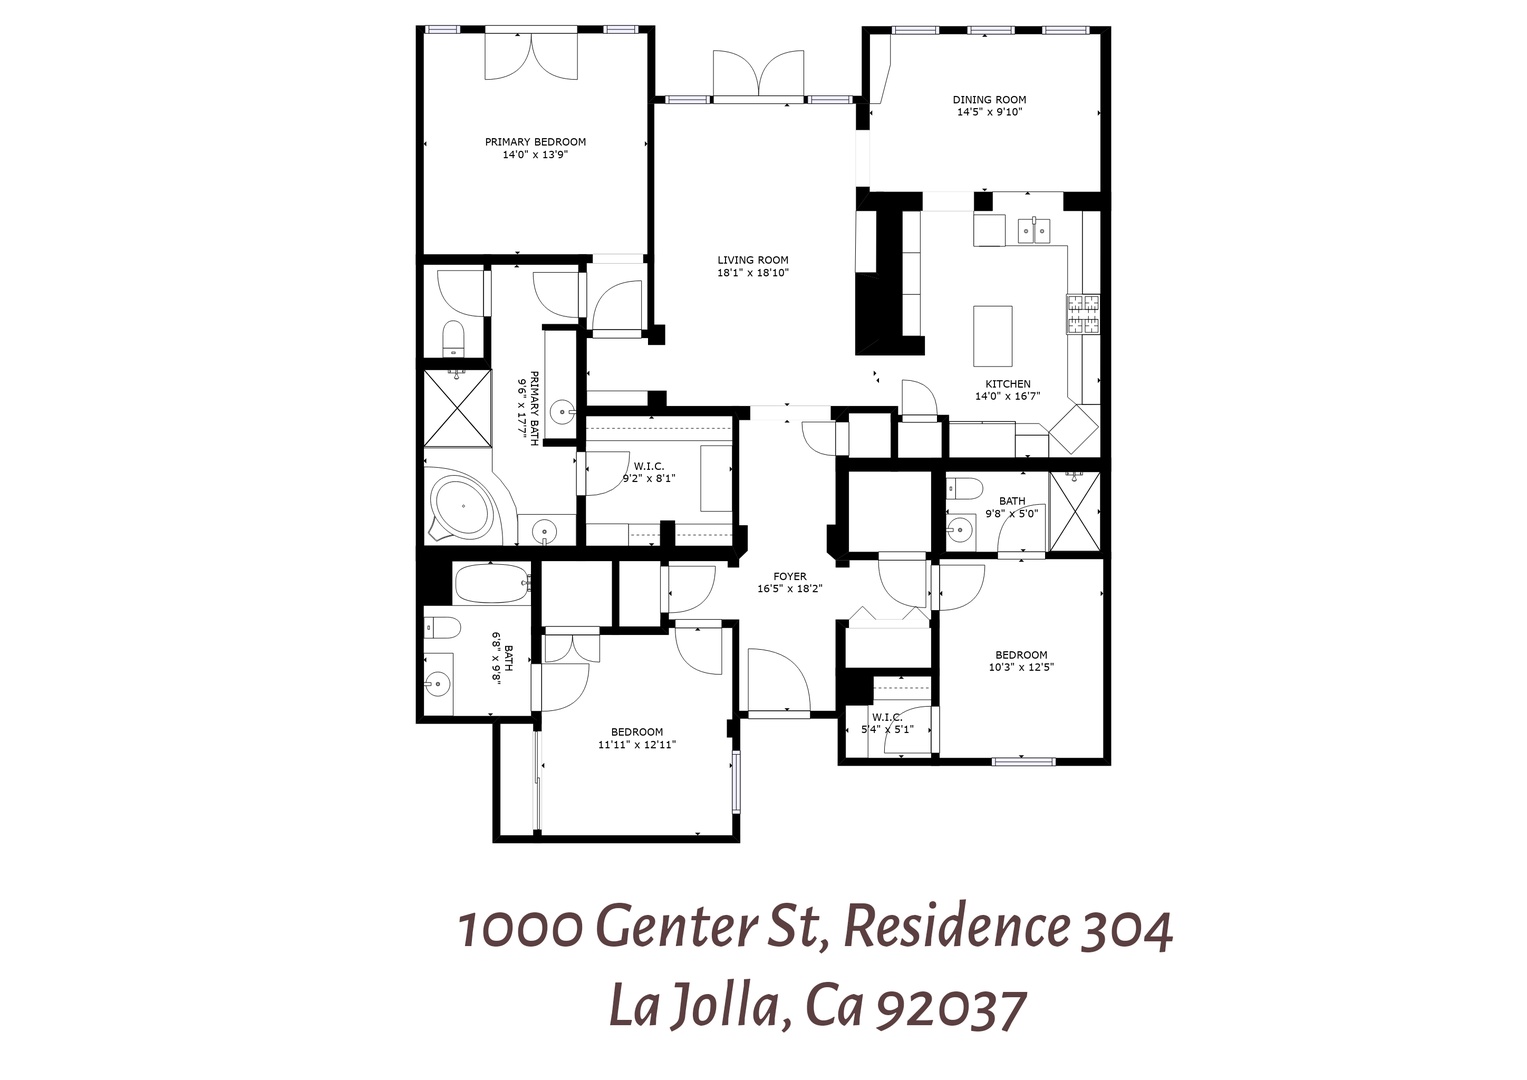 La Jolla Vacation Rentals, Montefaro in the Village of La Jolla - Home plan